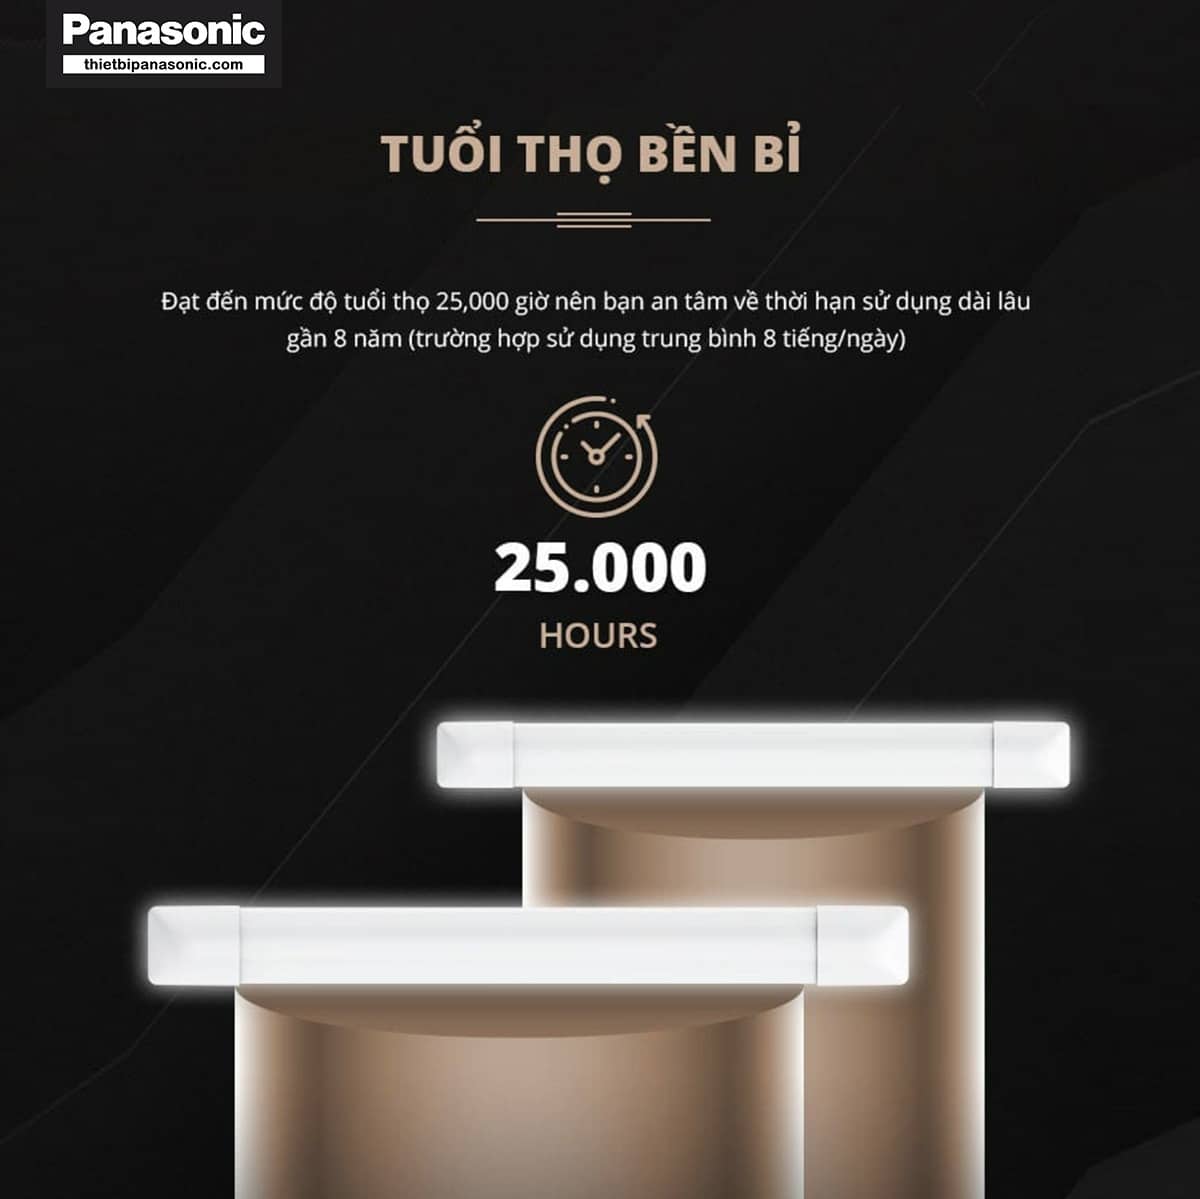 Bóng Đèn bán nguyệt Panasonic có tuổi thọ lên đến 25.000 giờ